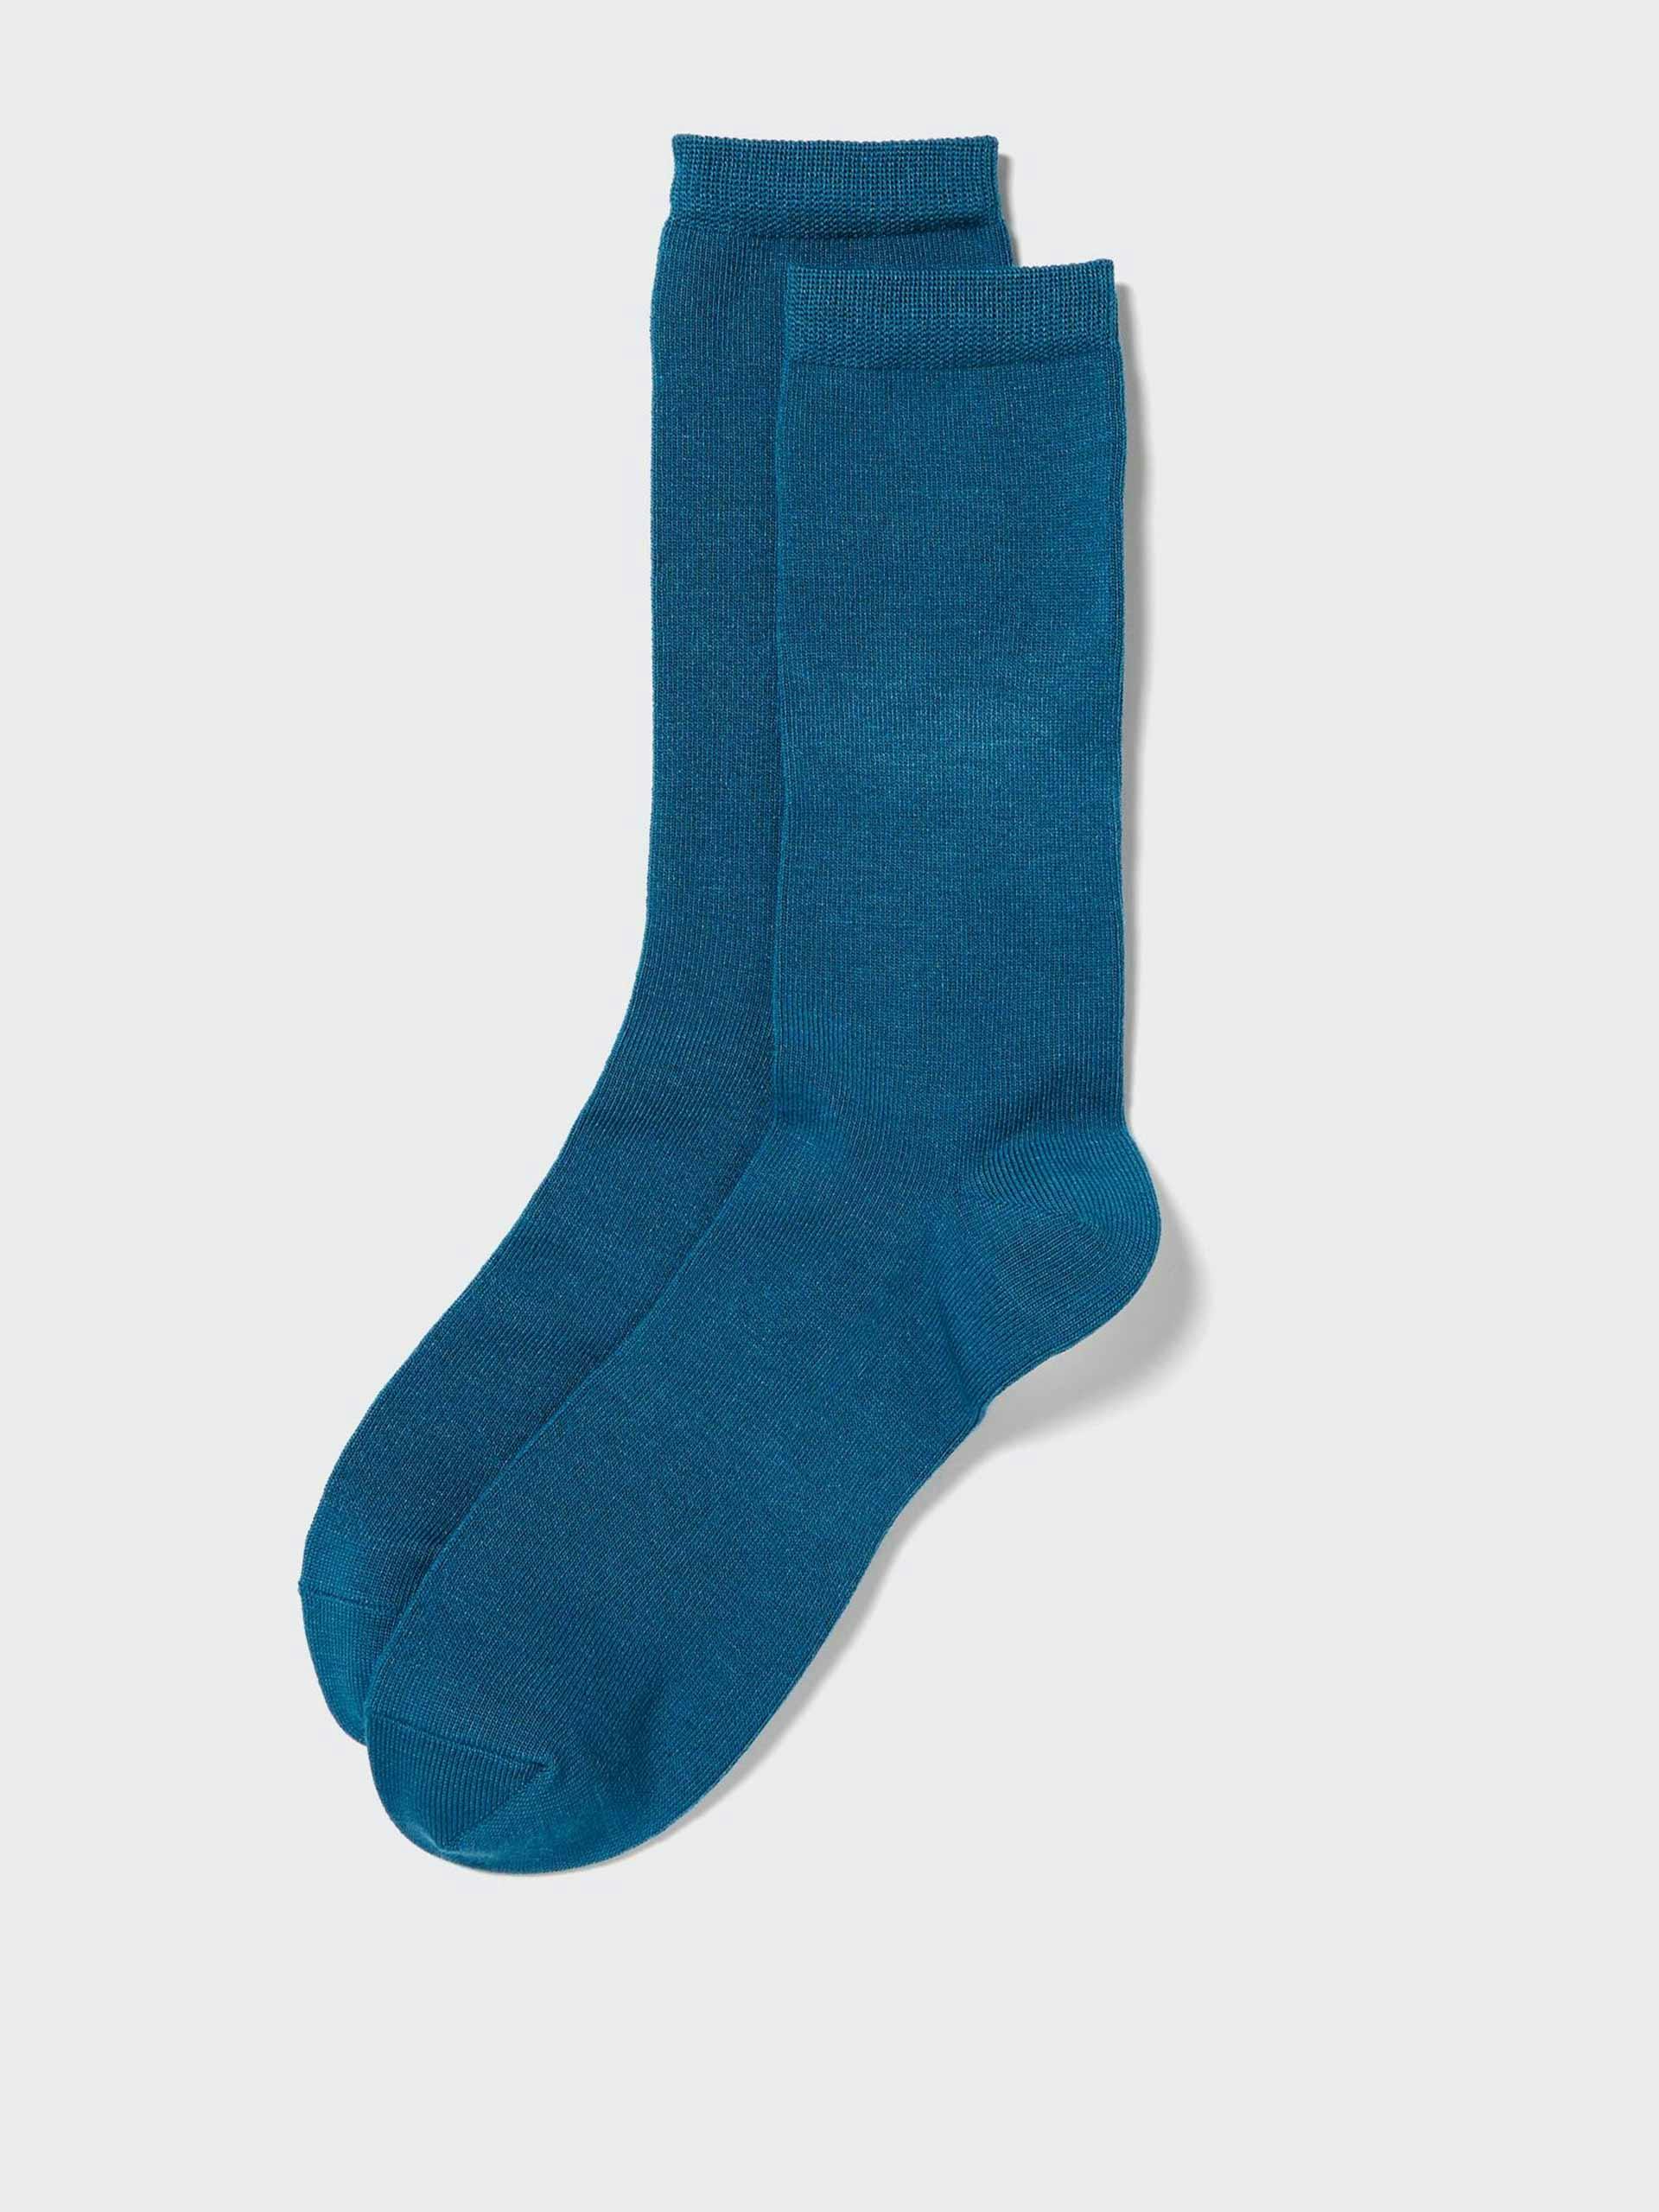 Heattech blue thermal socks